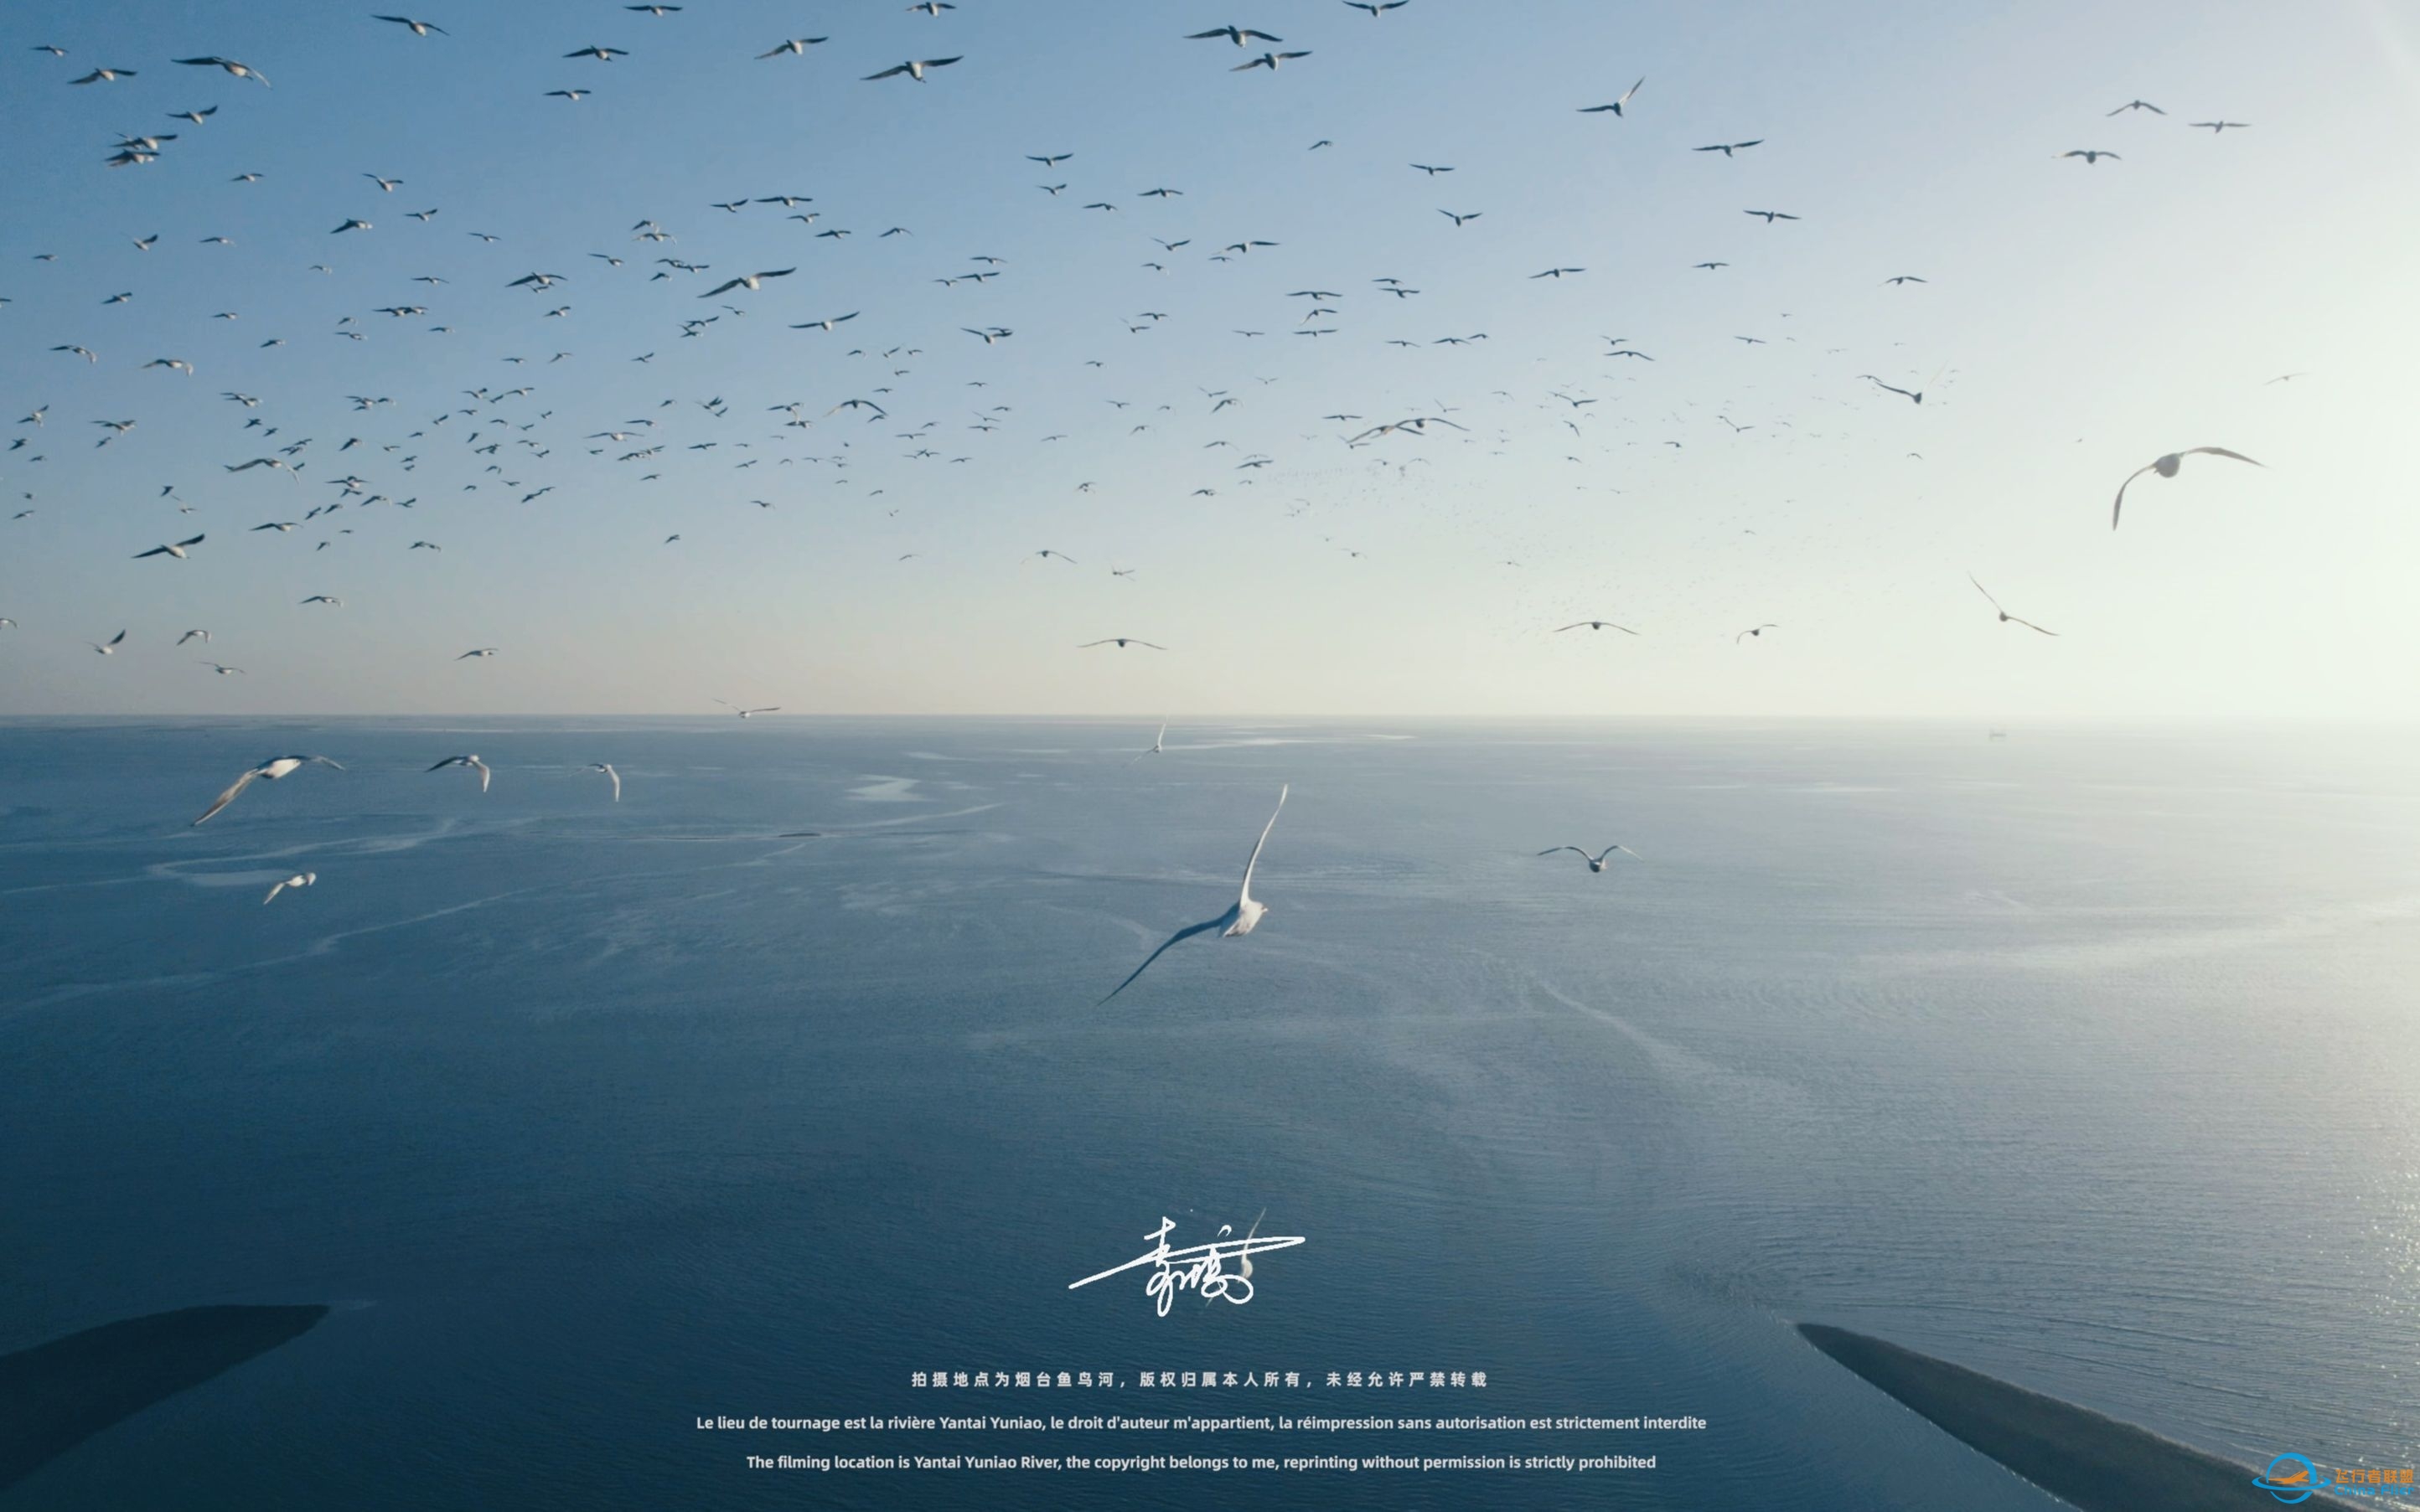 【沉浸式飞行】[DJI AIR 2S]一次跟海鸥一起的沉浸式飞行体验~-3511 